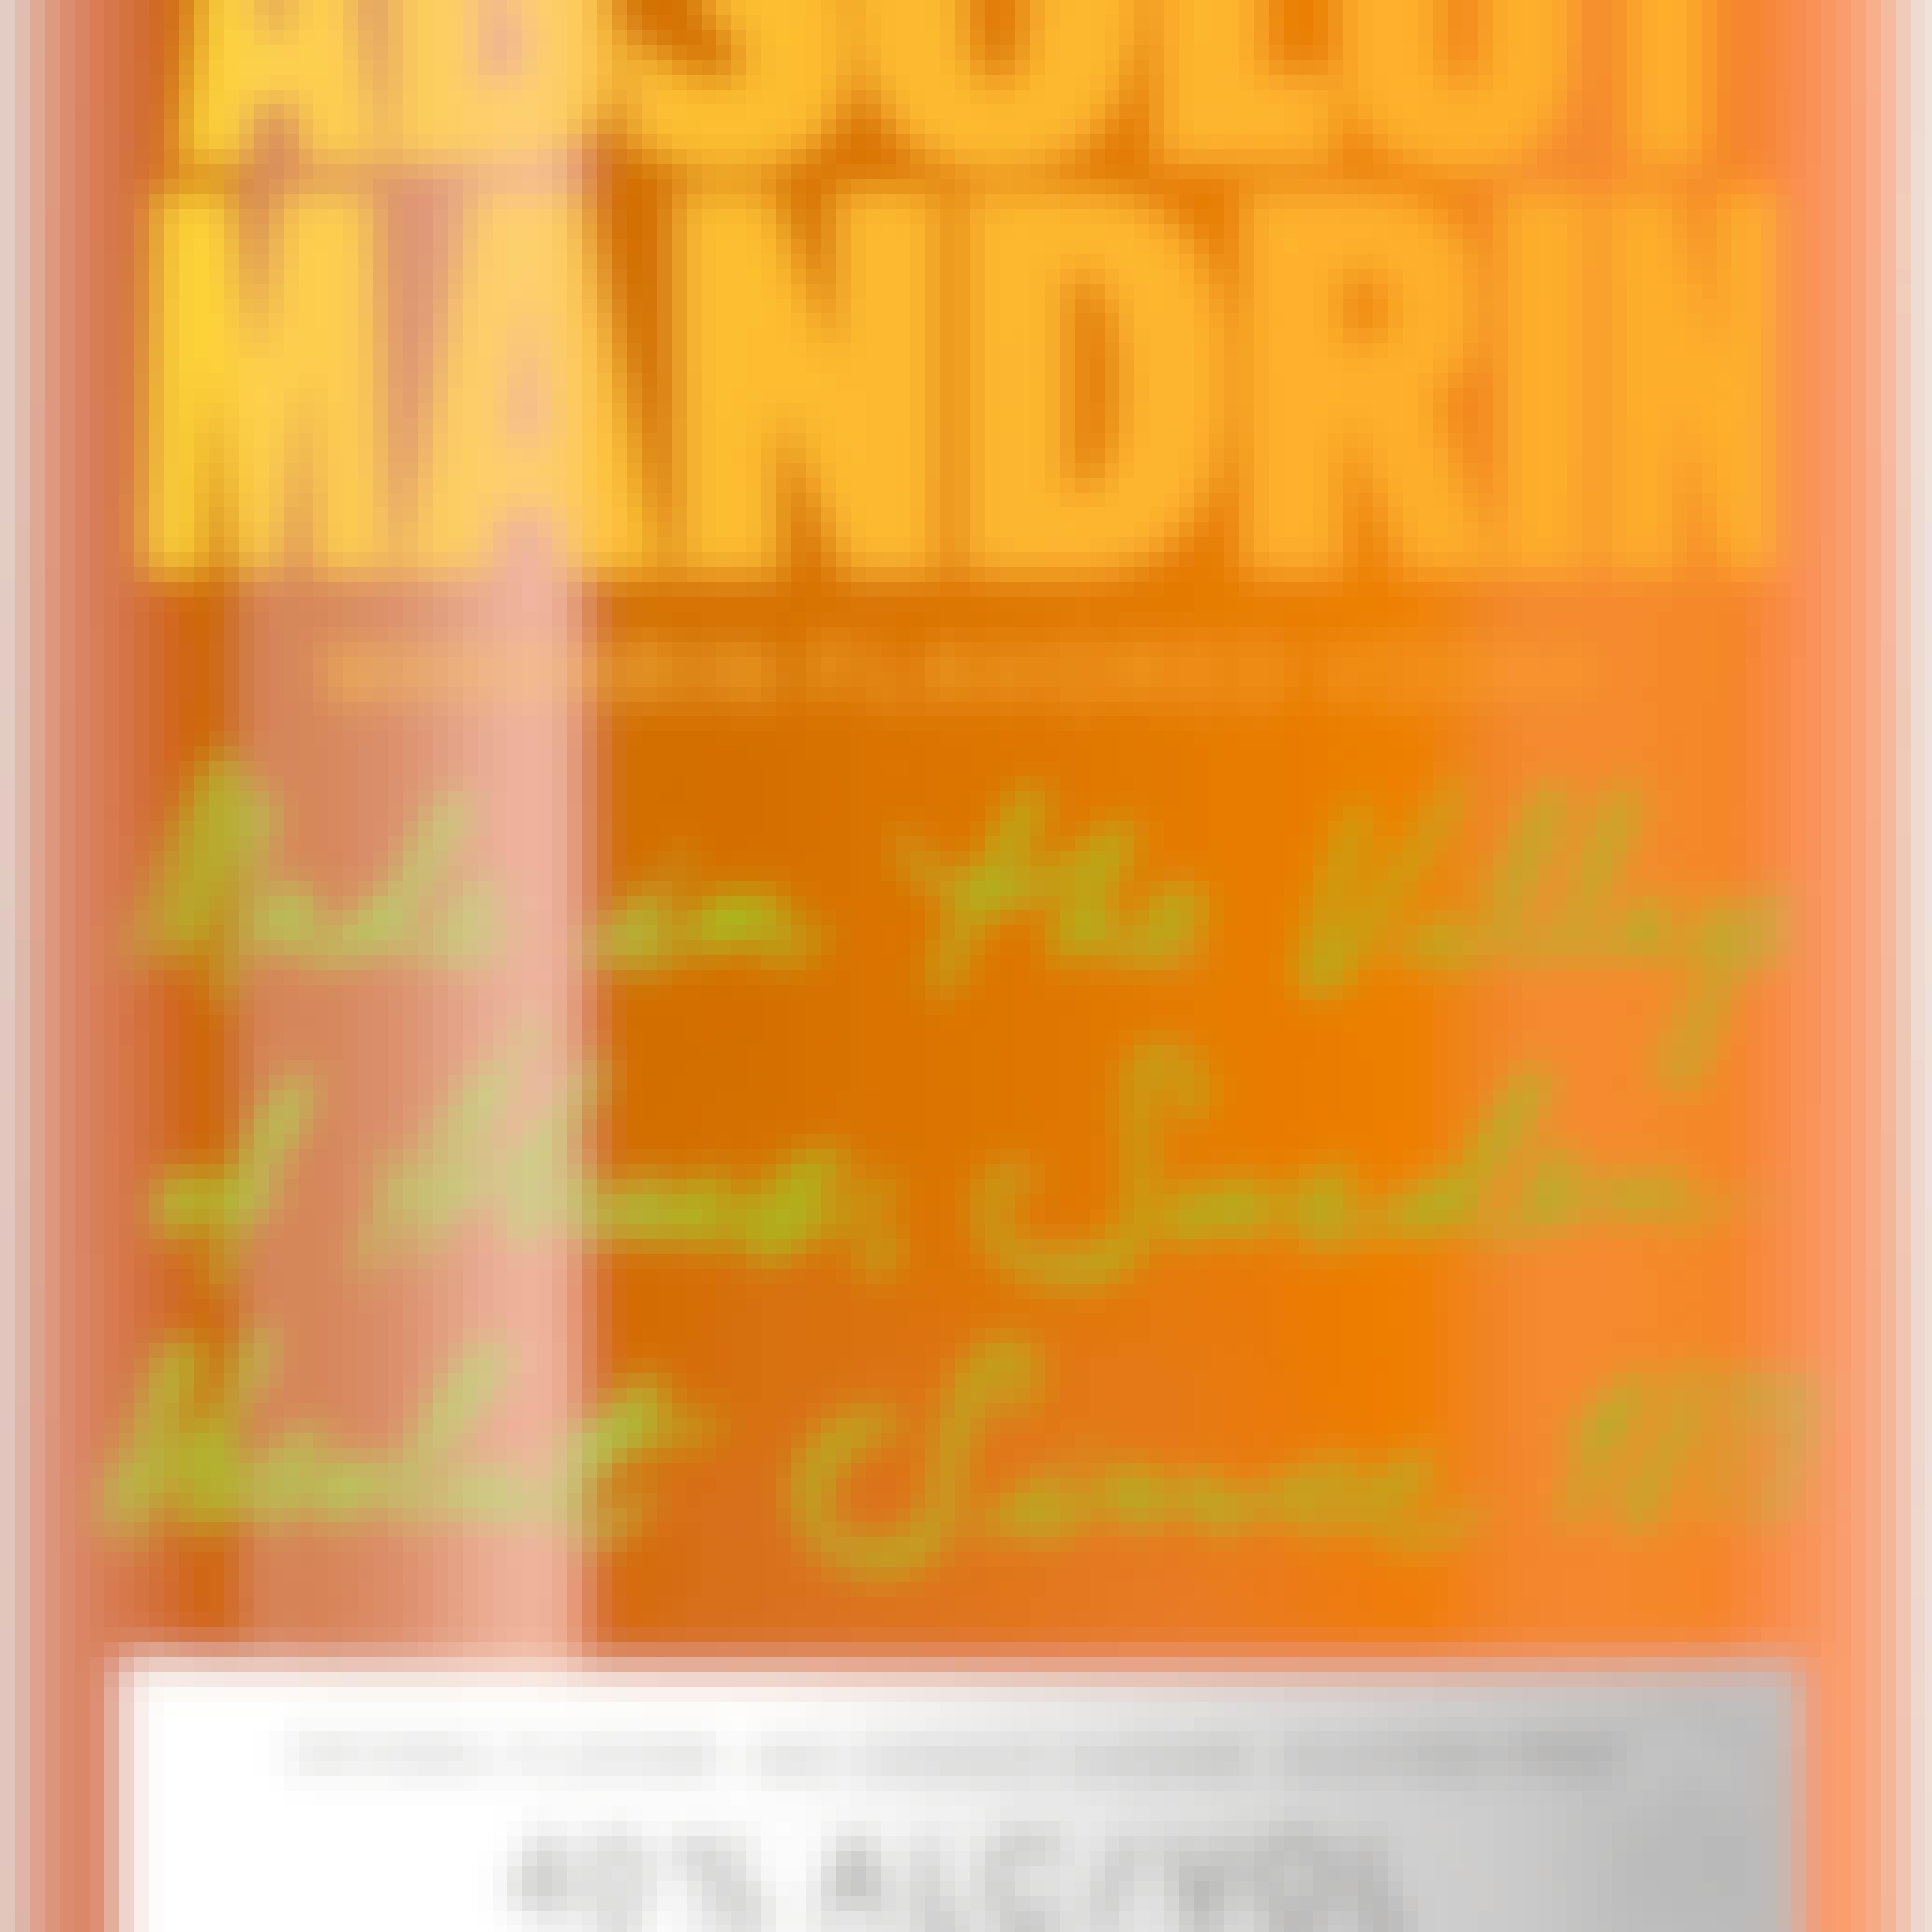 Absolut Mandrin Orange Vodka 750ml